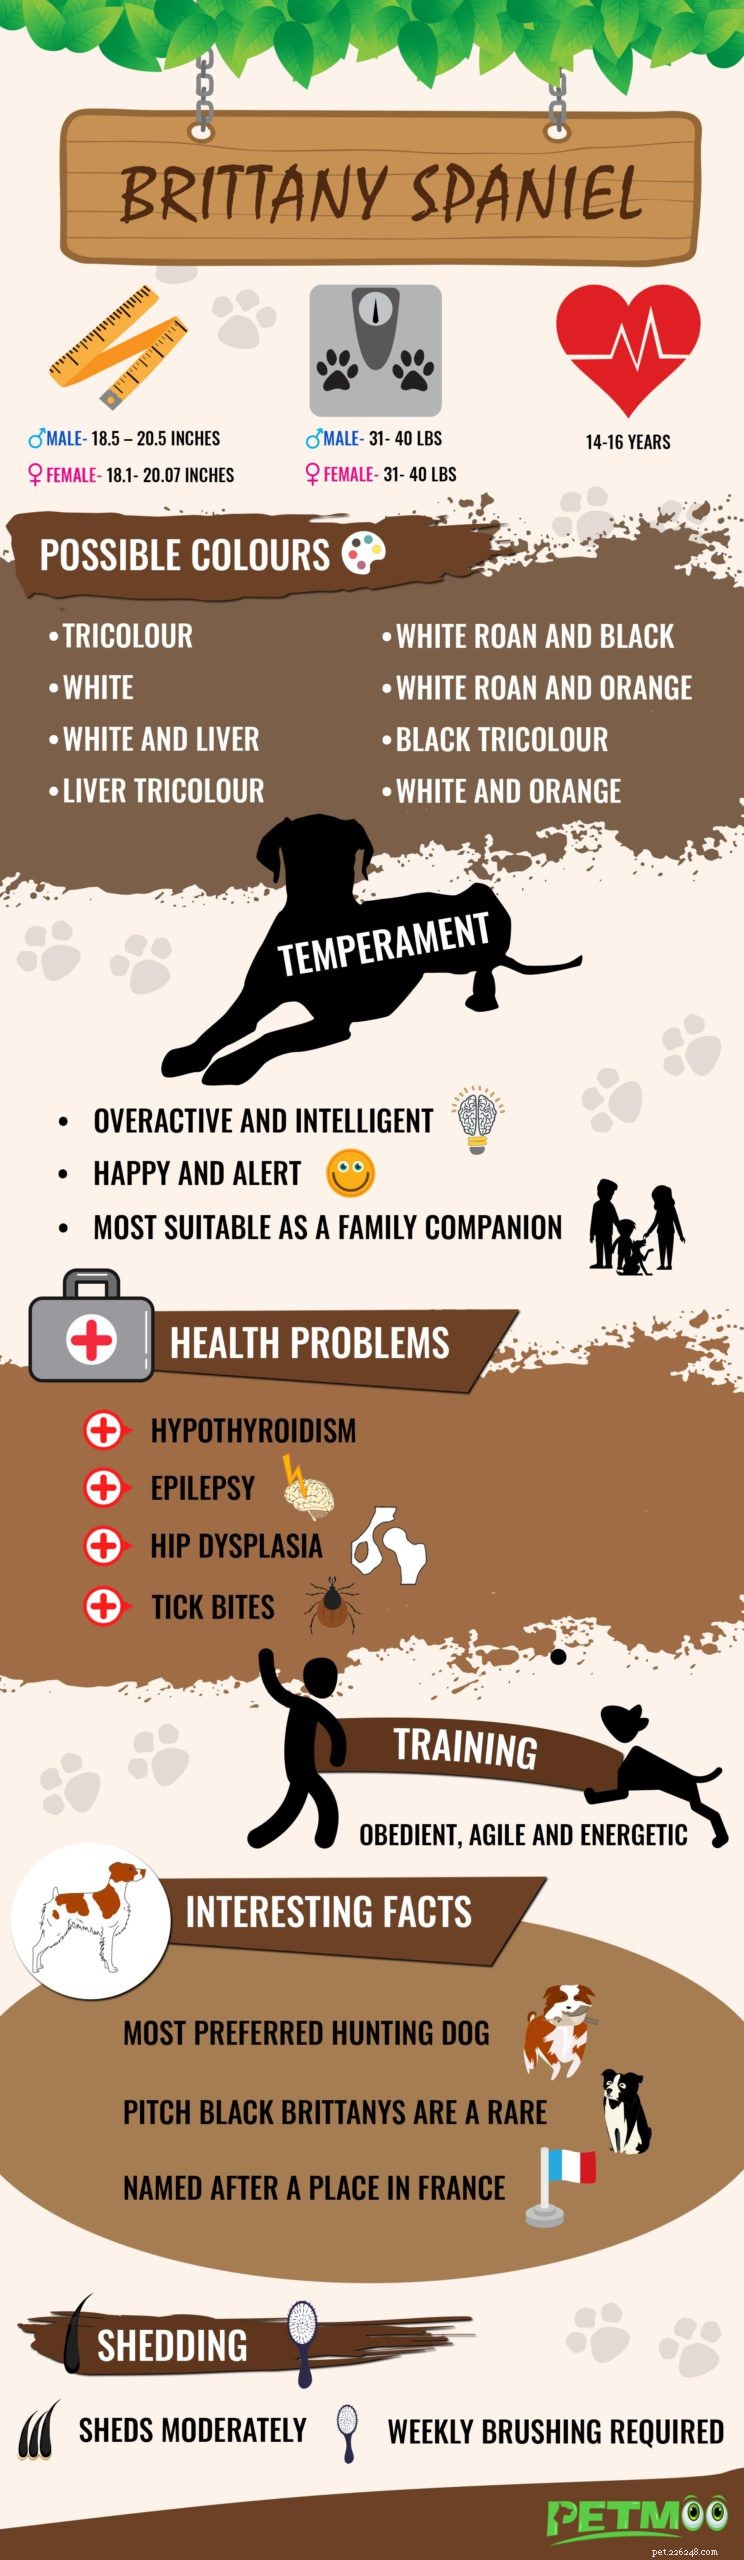 Brittany Spaniel – Moet informatie over hondenrassen weten